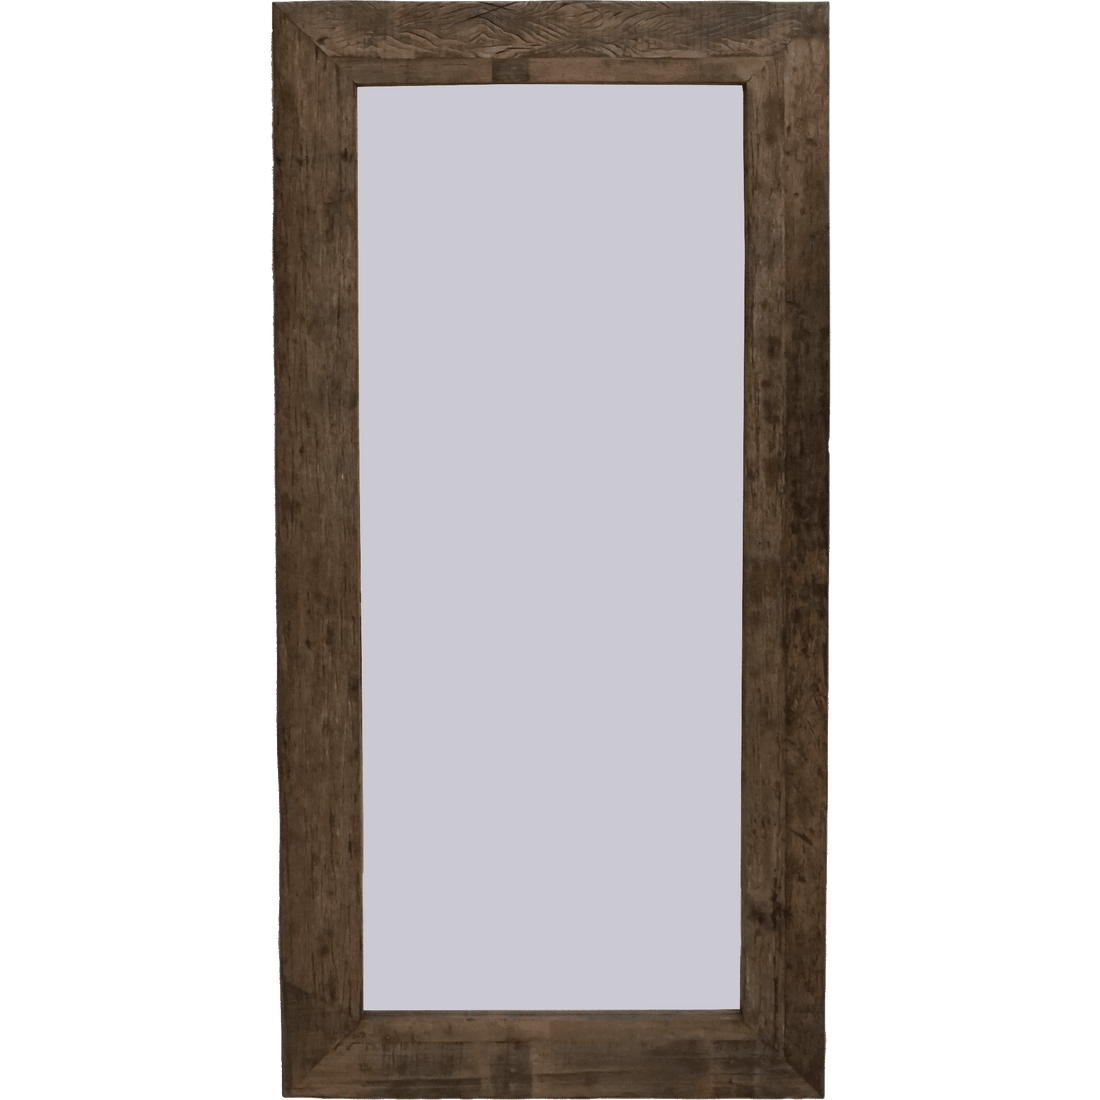 Marca registada Living Laco espelho de parede grande com moldura de madeira